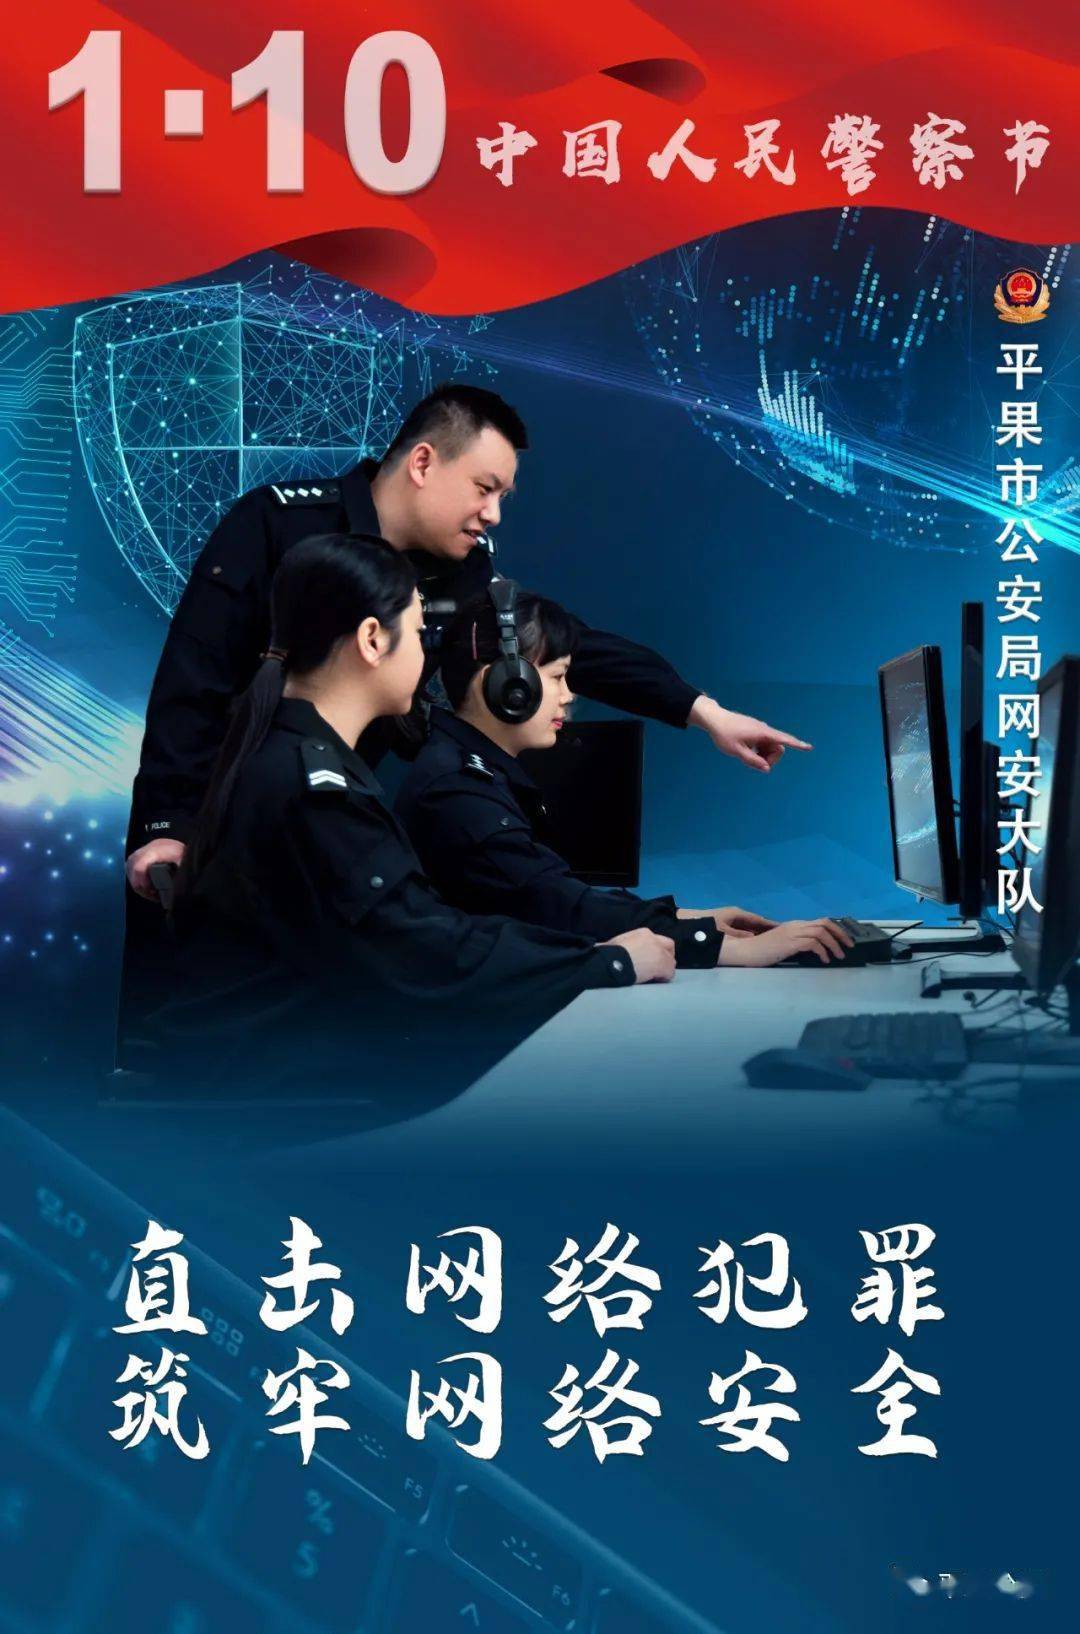 平果公安一组超燃海报致敬首个中国人民警察节